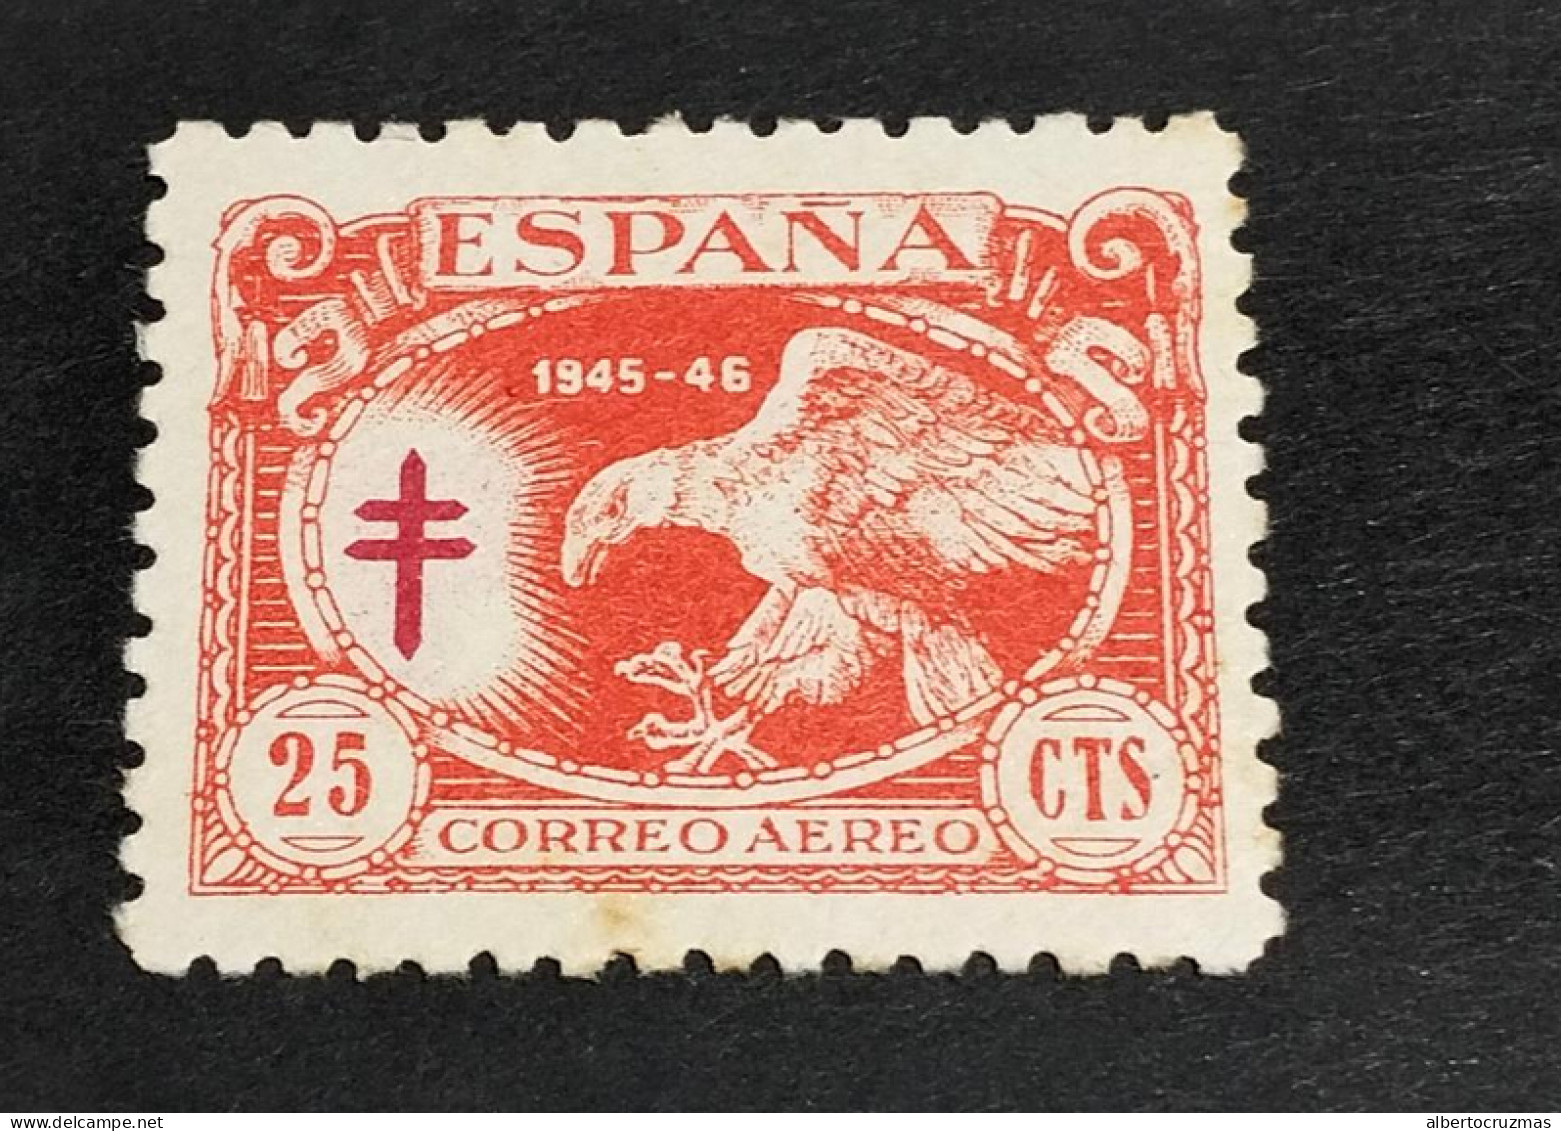 ESPAÑA SELLOS PROTUBERCULOS AGUILA EDIFIL 997 SELLOS AÑO 1945 SELLOS NUEVOS*/sombras MNG - Unused Stamps